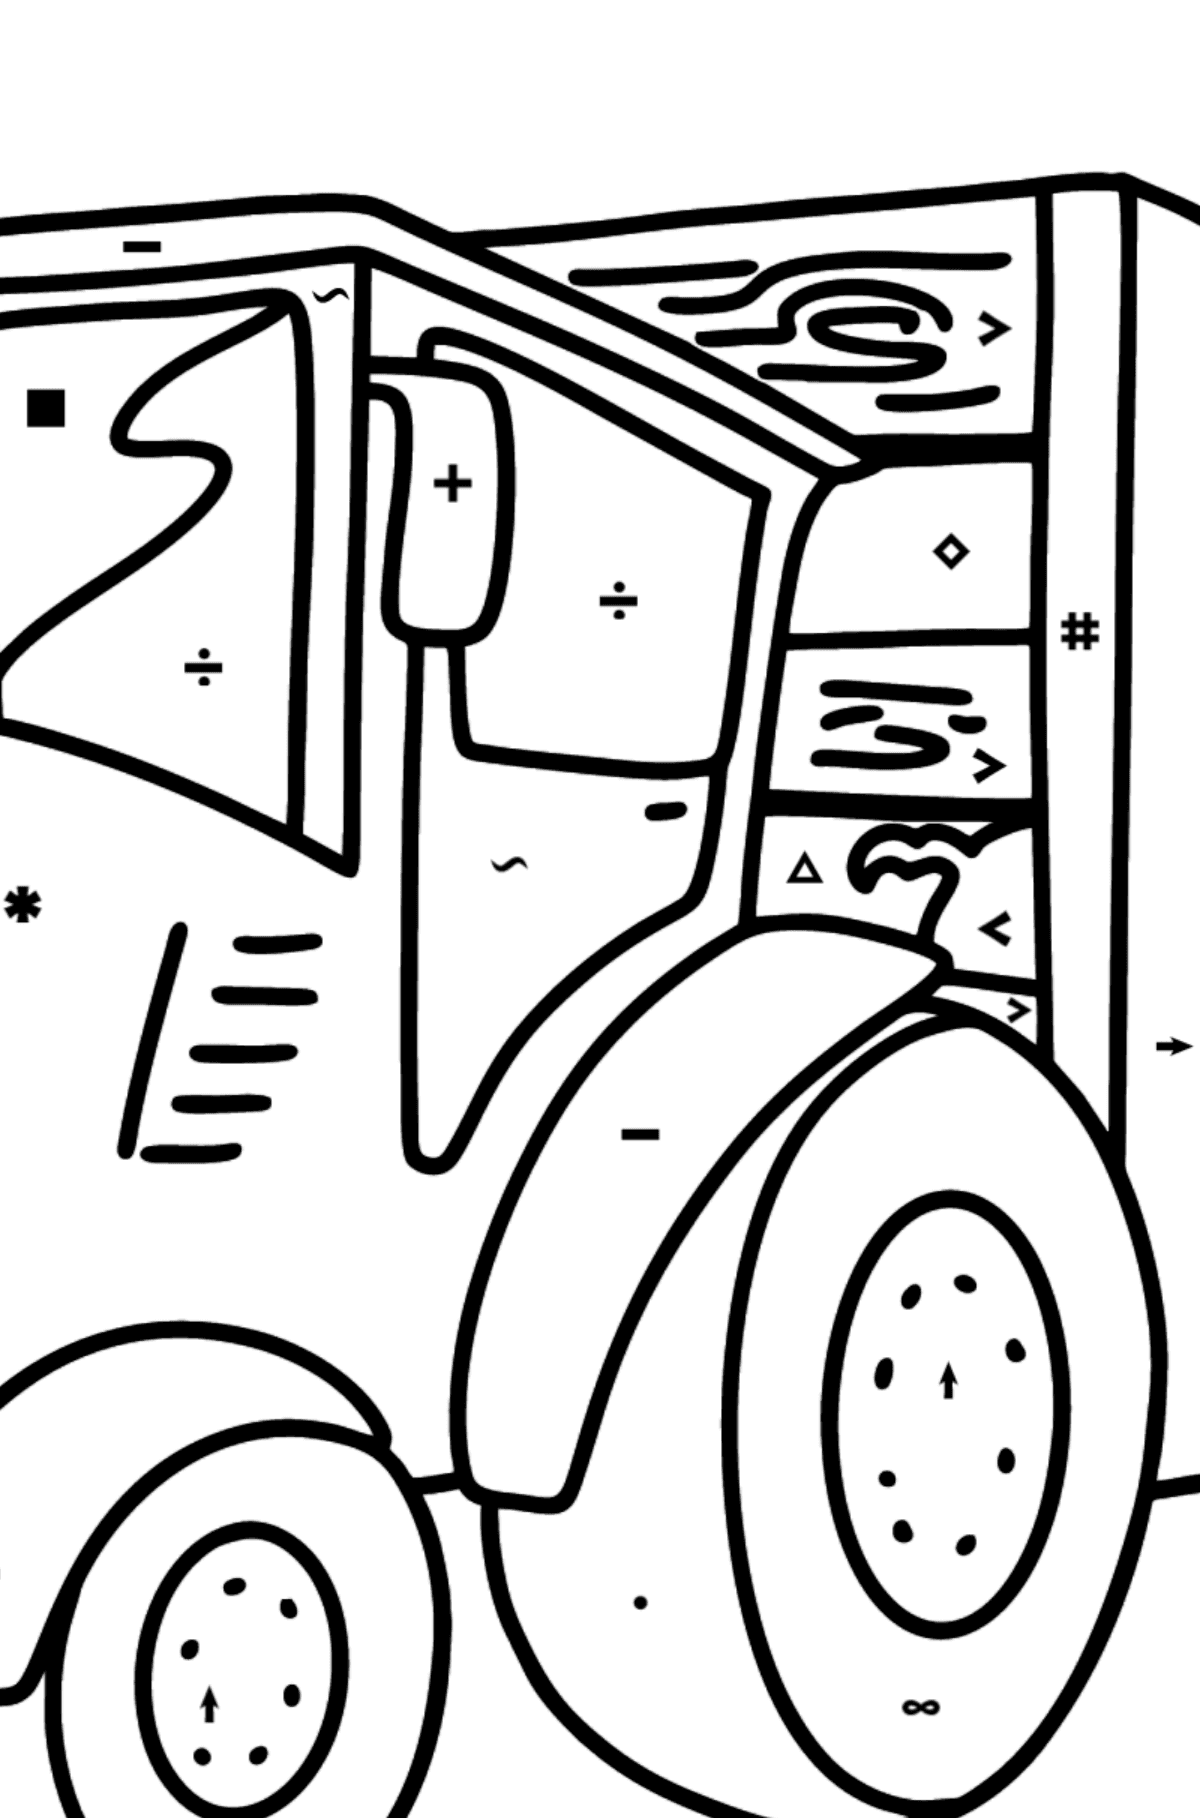 Coloriage - Tracteur avec remorque de cochon - Coloriage par Symboles pour les Enfants